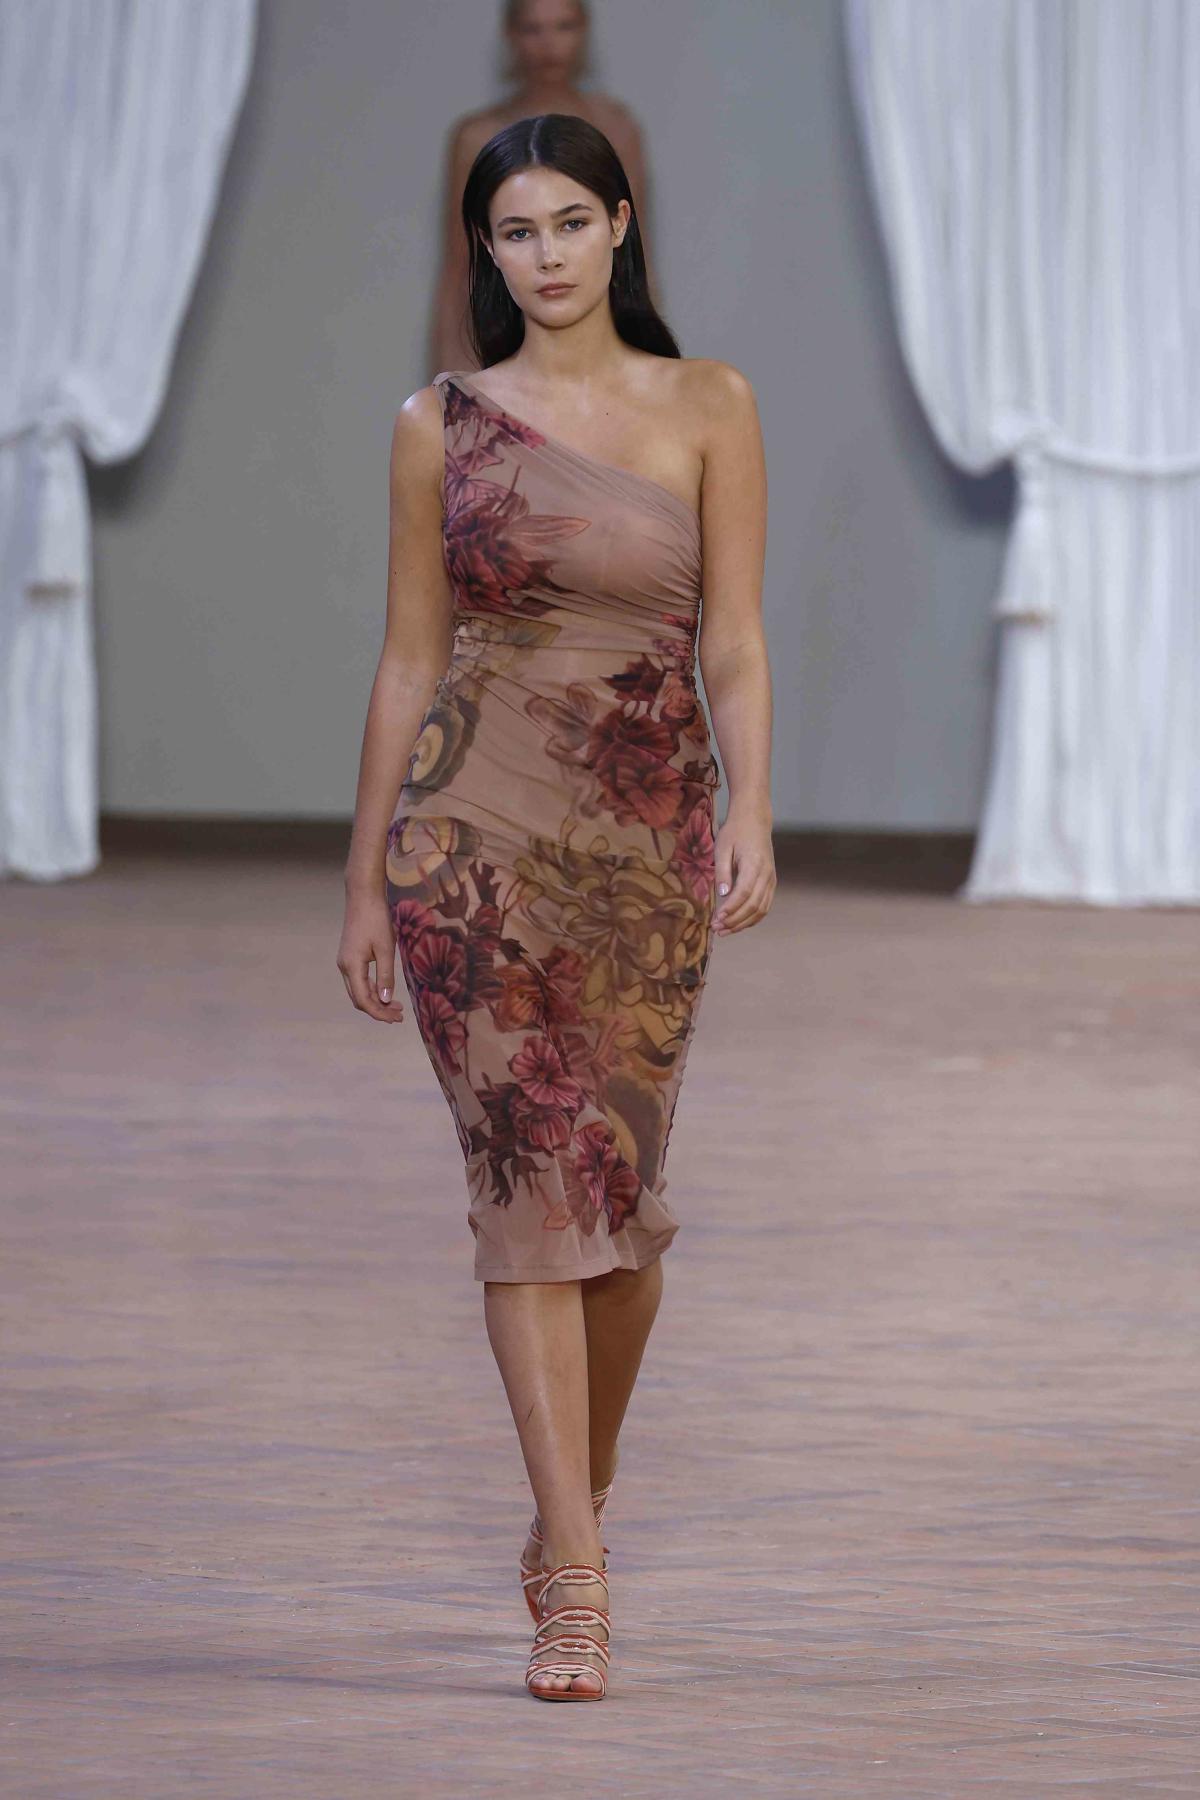 Christy Turlington's Daughter Grace Burns Made Her Milan Fashion Week Debut